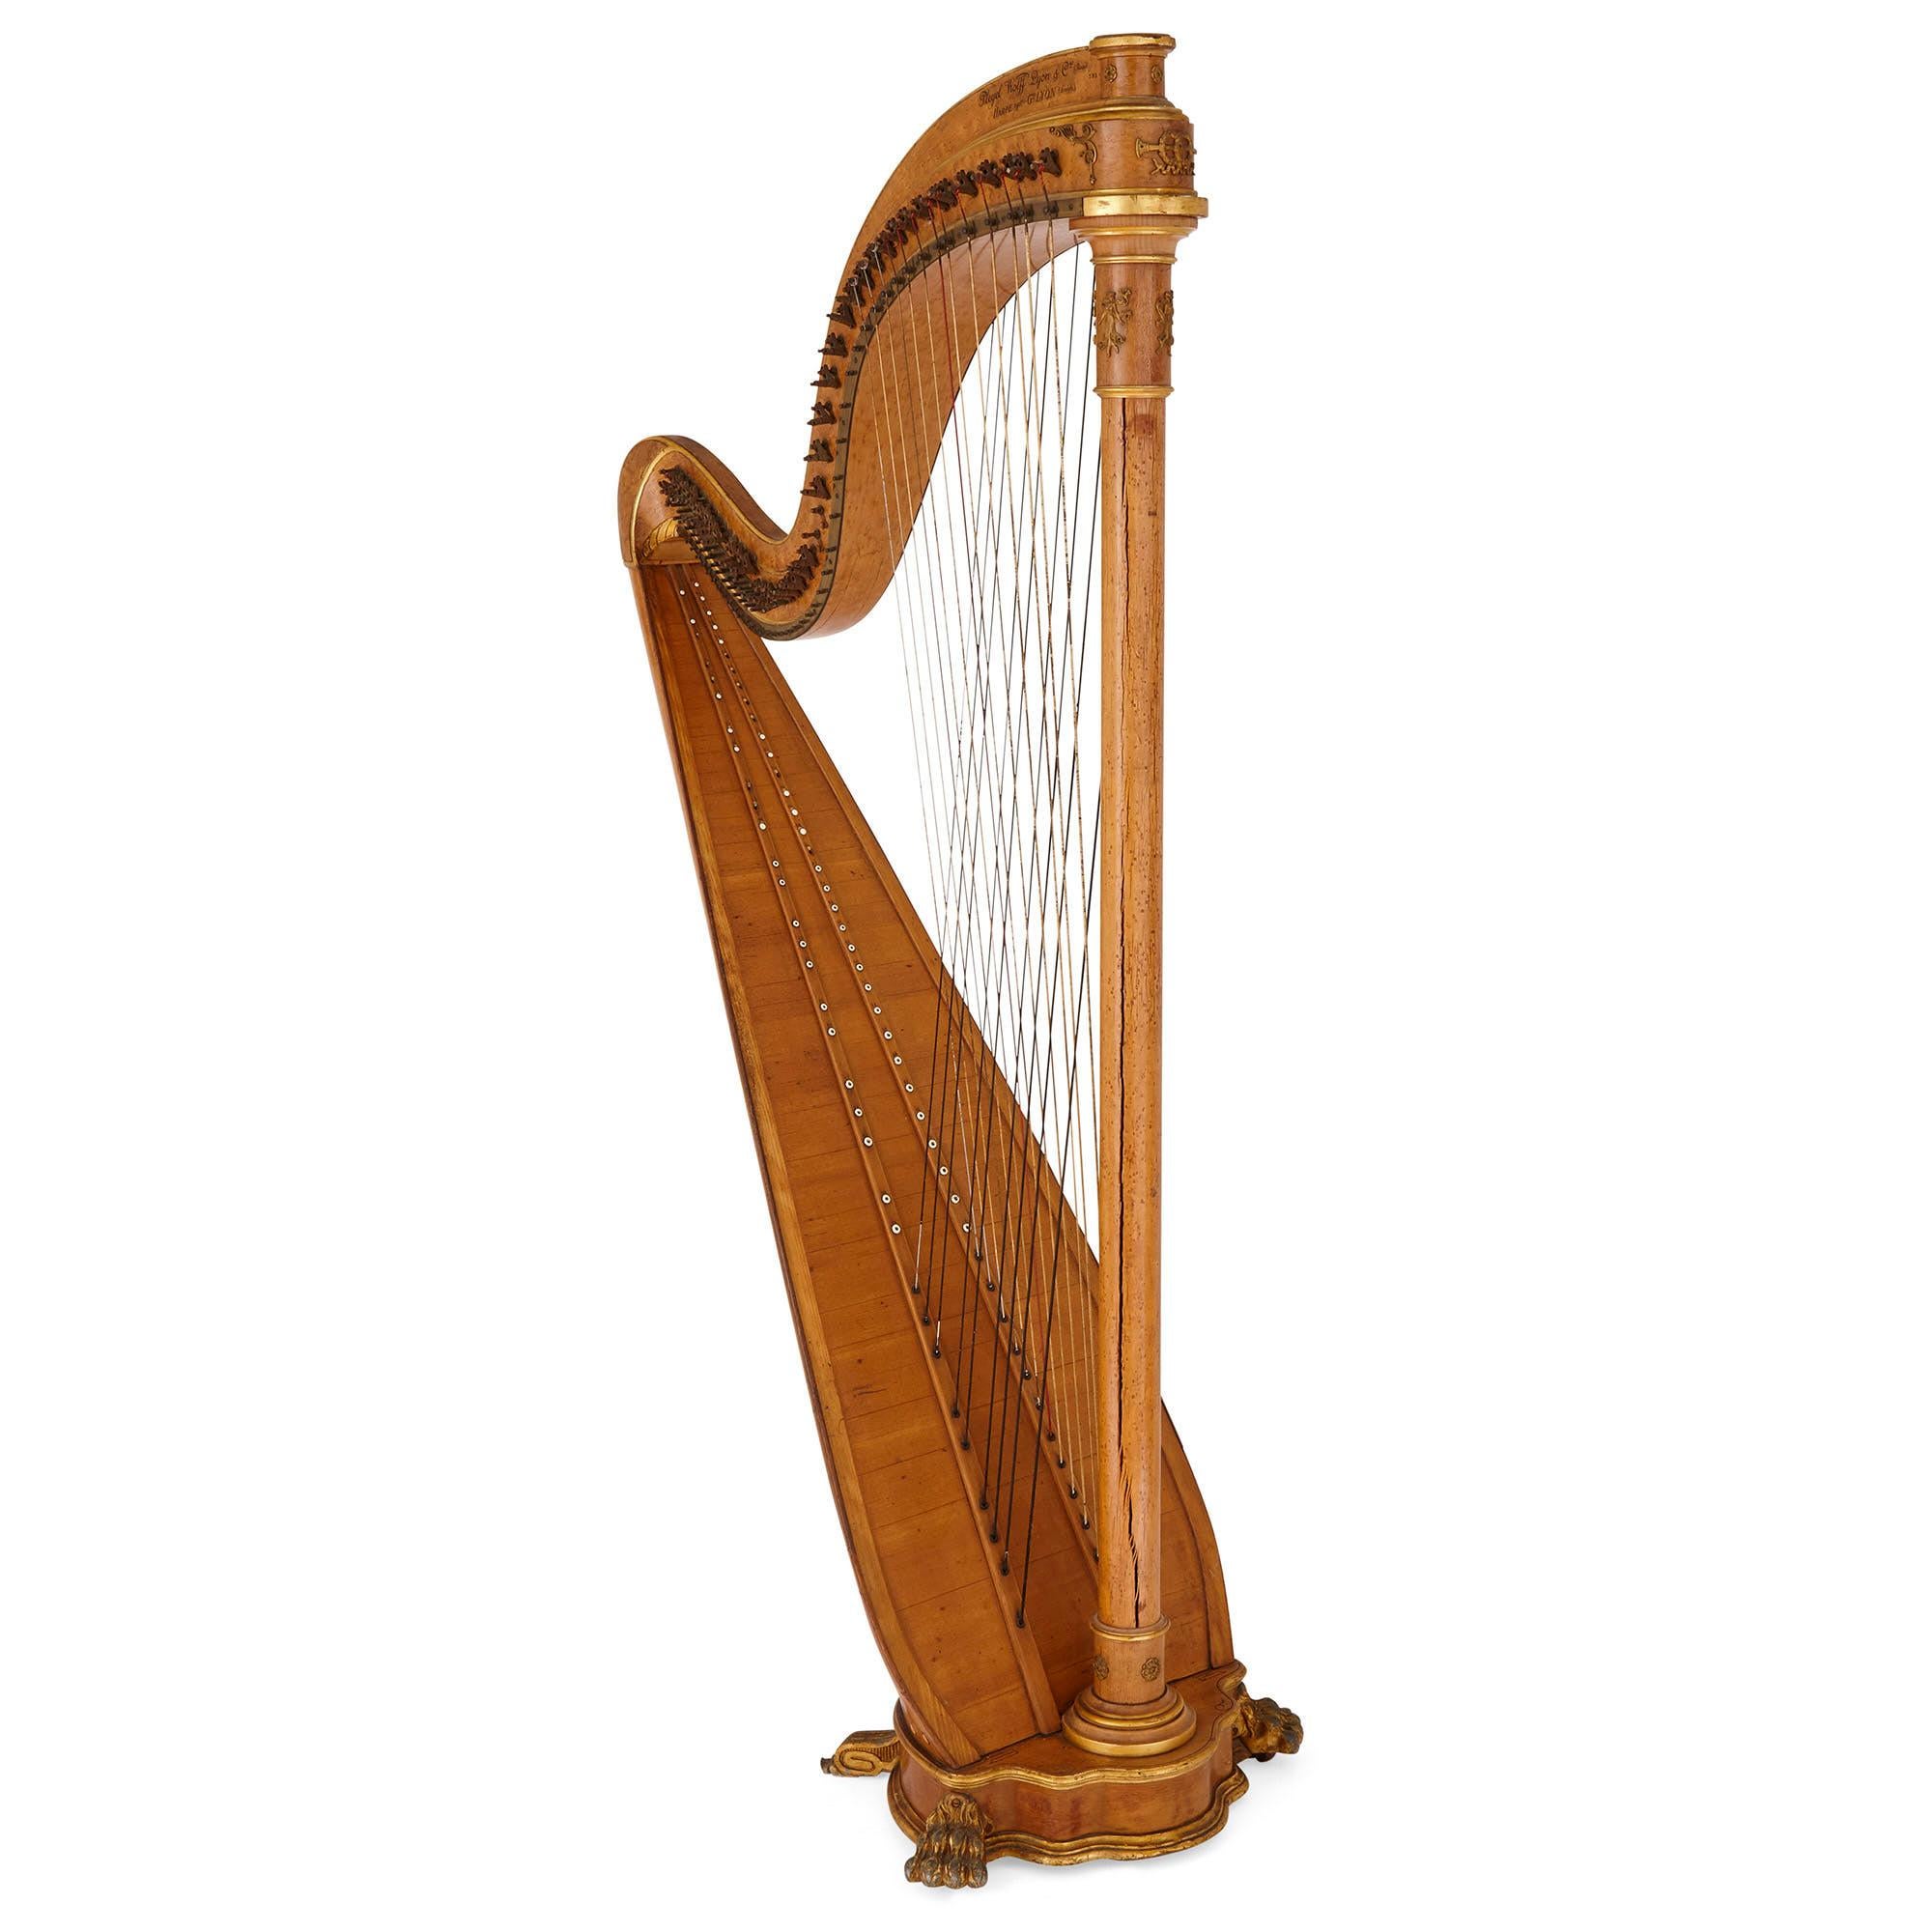 Cette belle harpe ancienne date de la seconde moitié du XIXe siècle et a été fabriquée en France par Pleyel, Wolff, Lyon et Cie. La célèbre firme parisienne fabriquait des instruments de musique, notamment des pianos, des clavecins et des harpes,